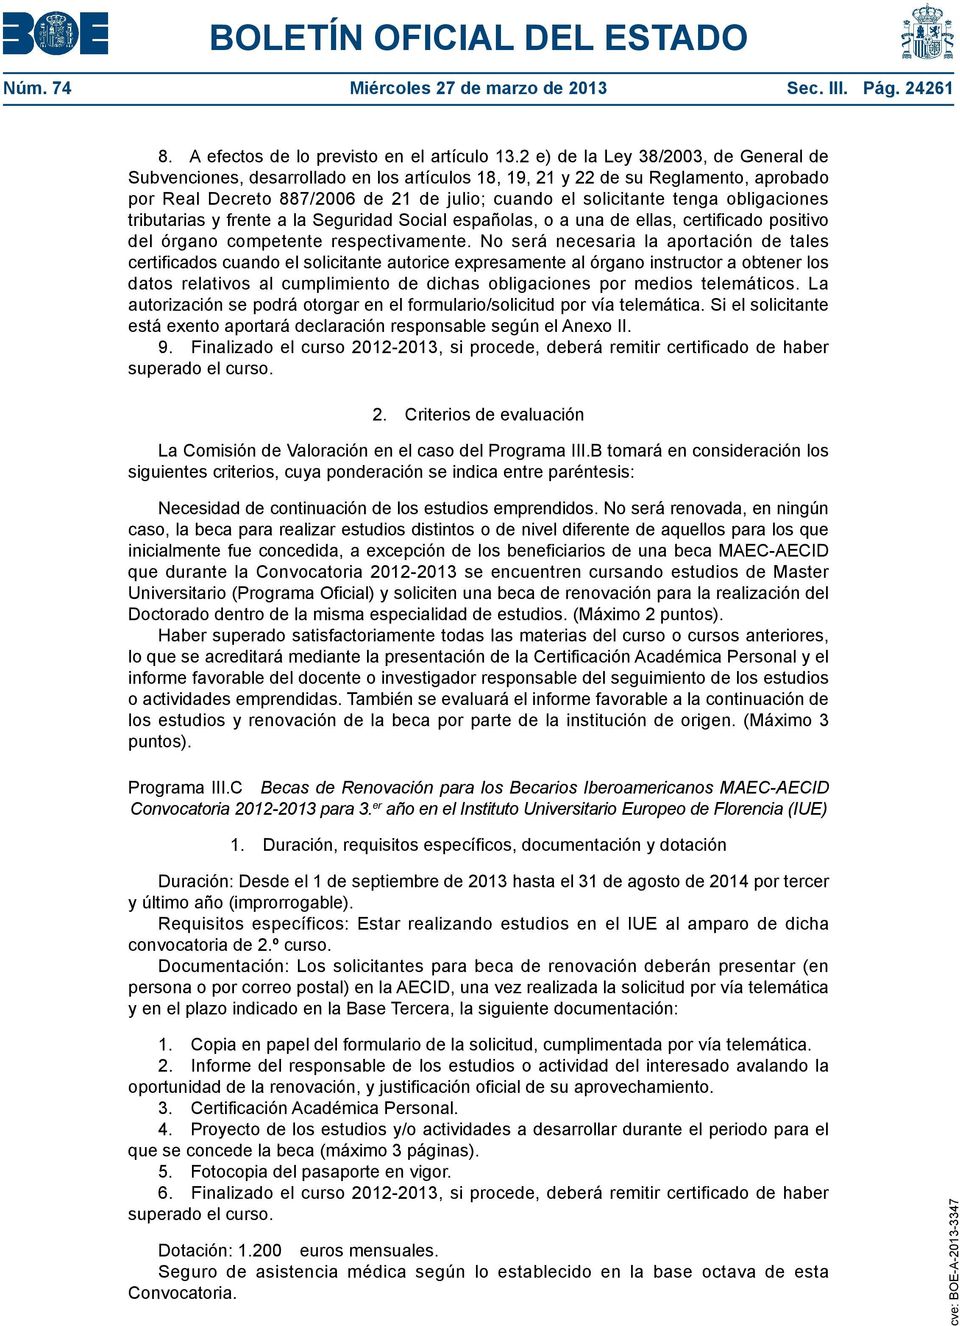 obligaciones tributarias y frente a la Seguridad Social españolas, o a una de ellas, certificado positivo del órgano competente respectivamente.